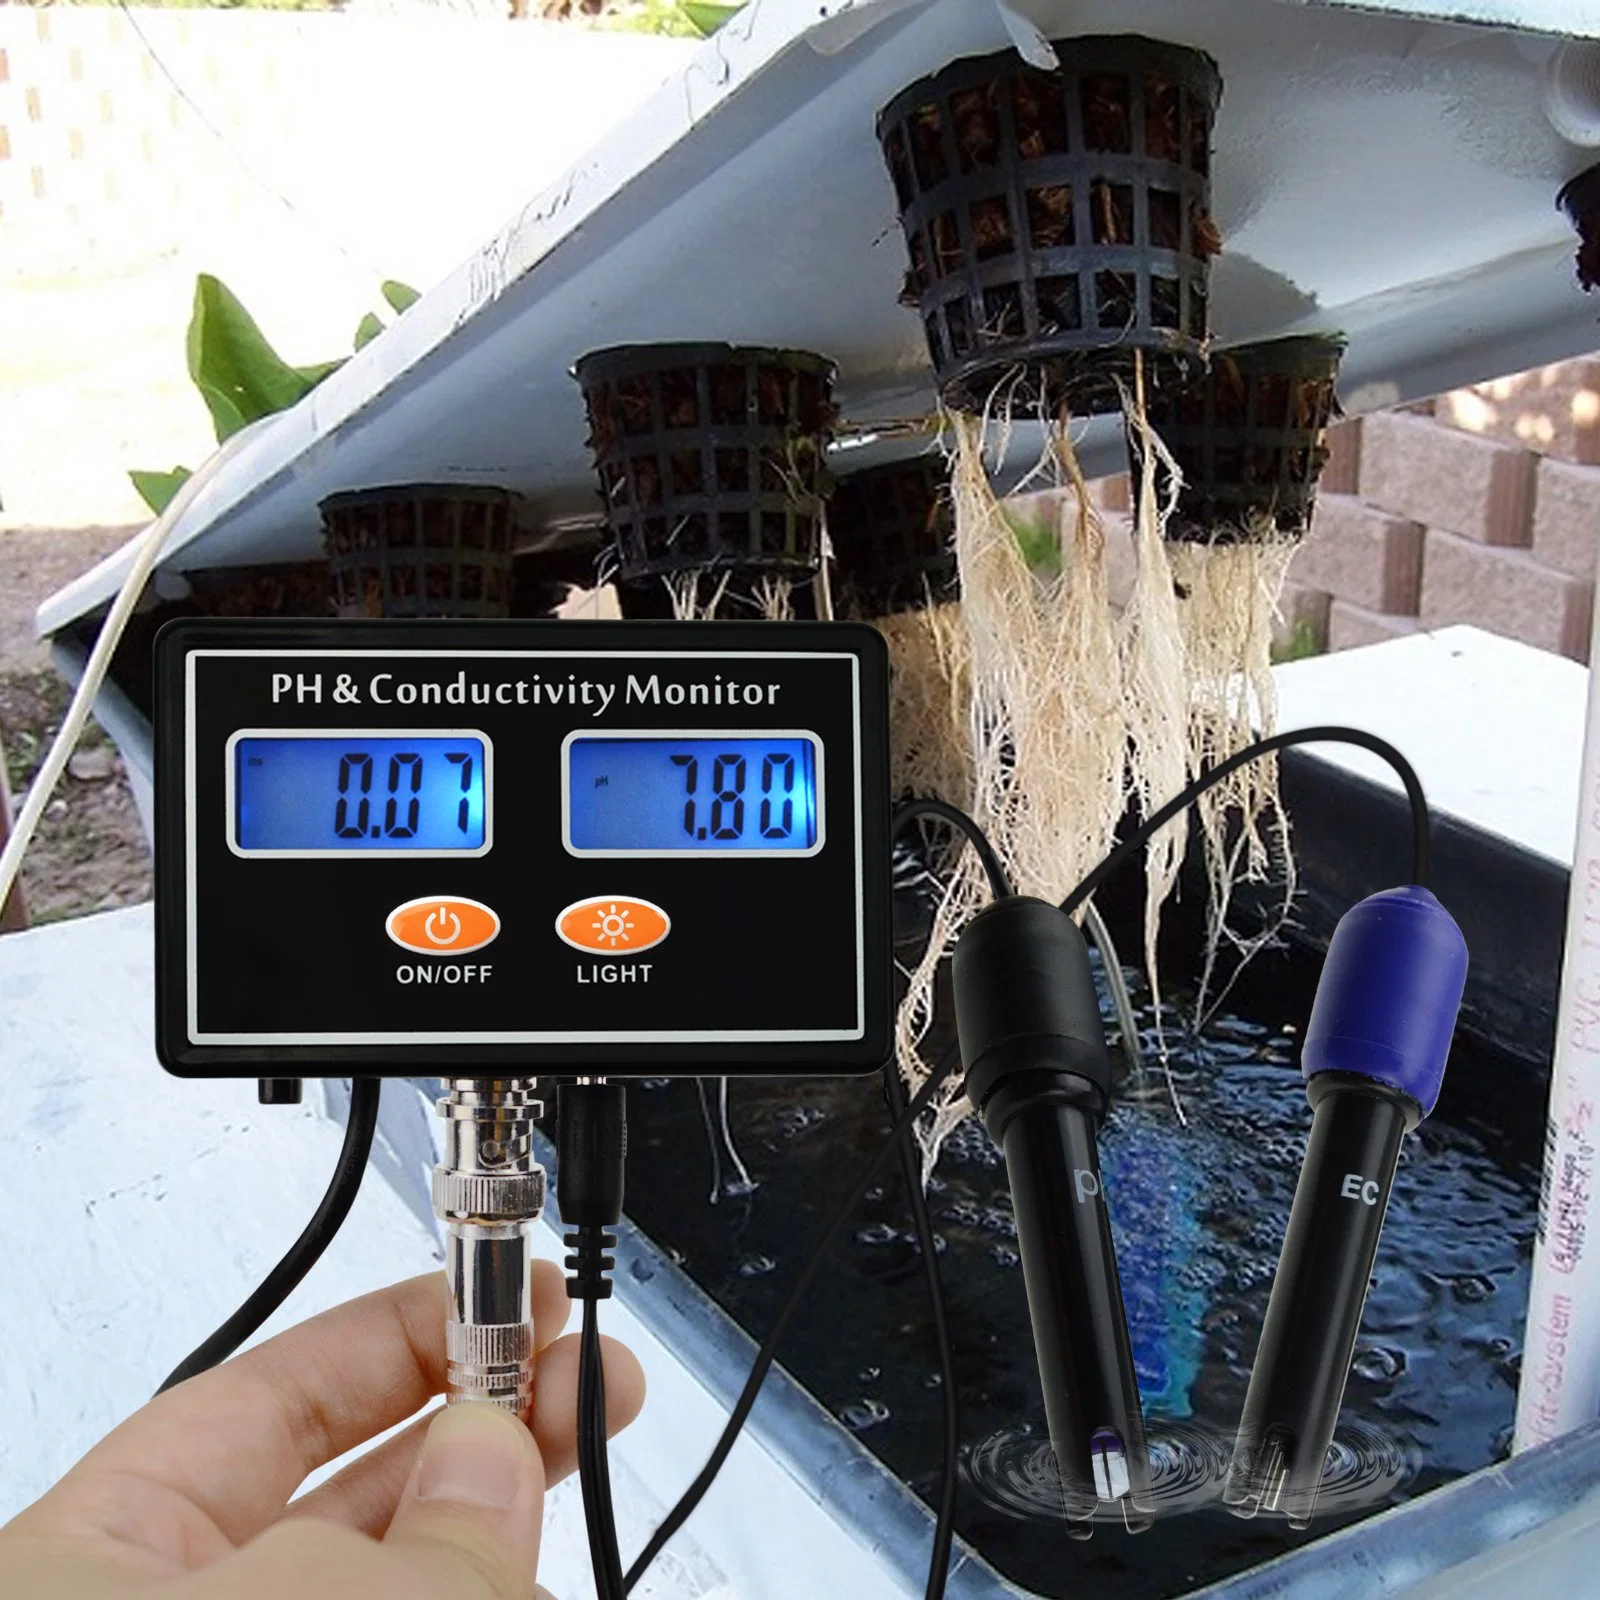 Appareils de mesure pH/ce de haute qualité pour les tests d'eau hydroponique